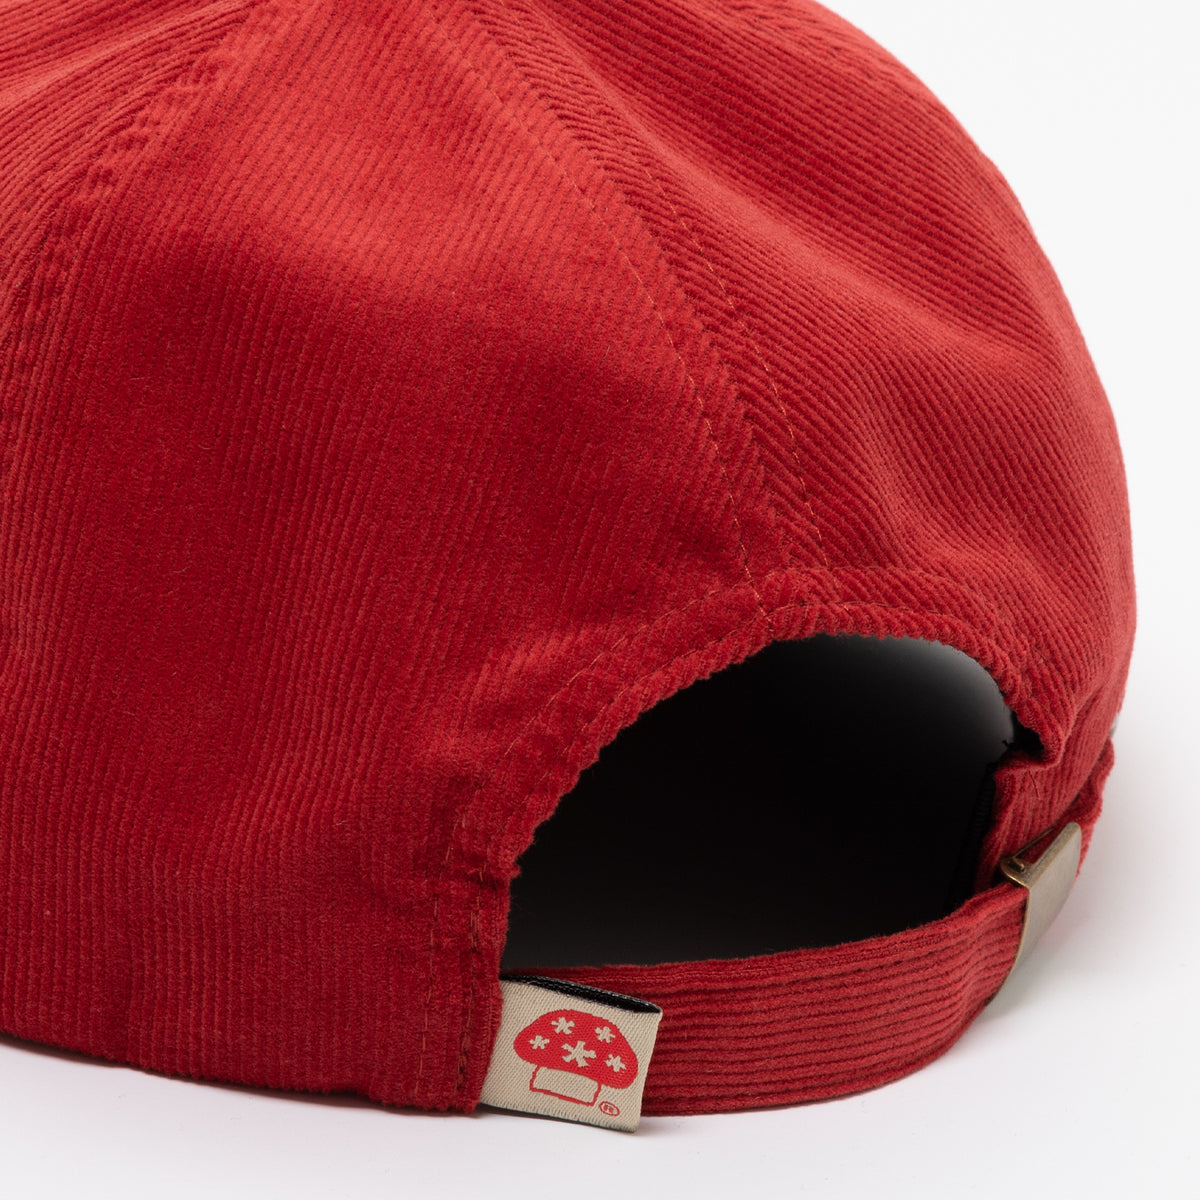 Hawkstar Hat (Red)